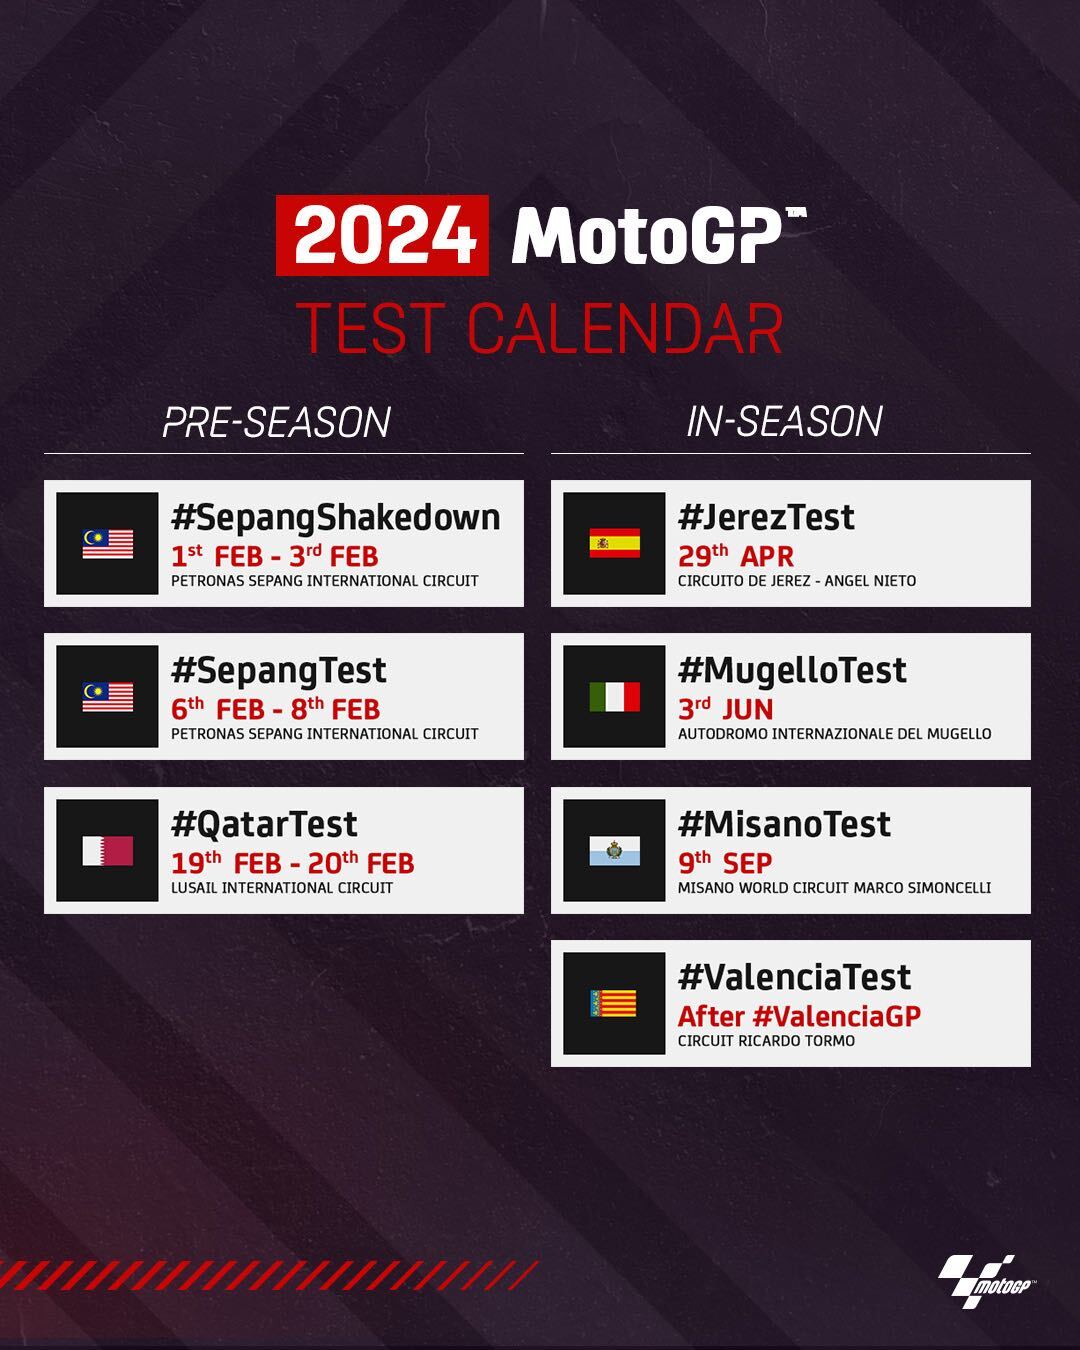 2024 MotoGP in-season test dates confirmed